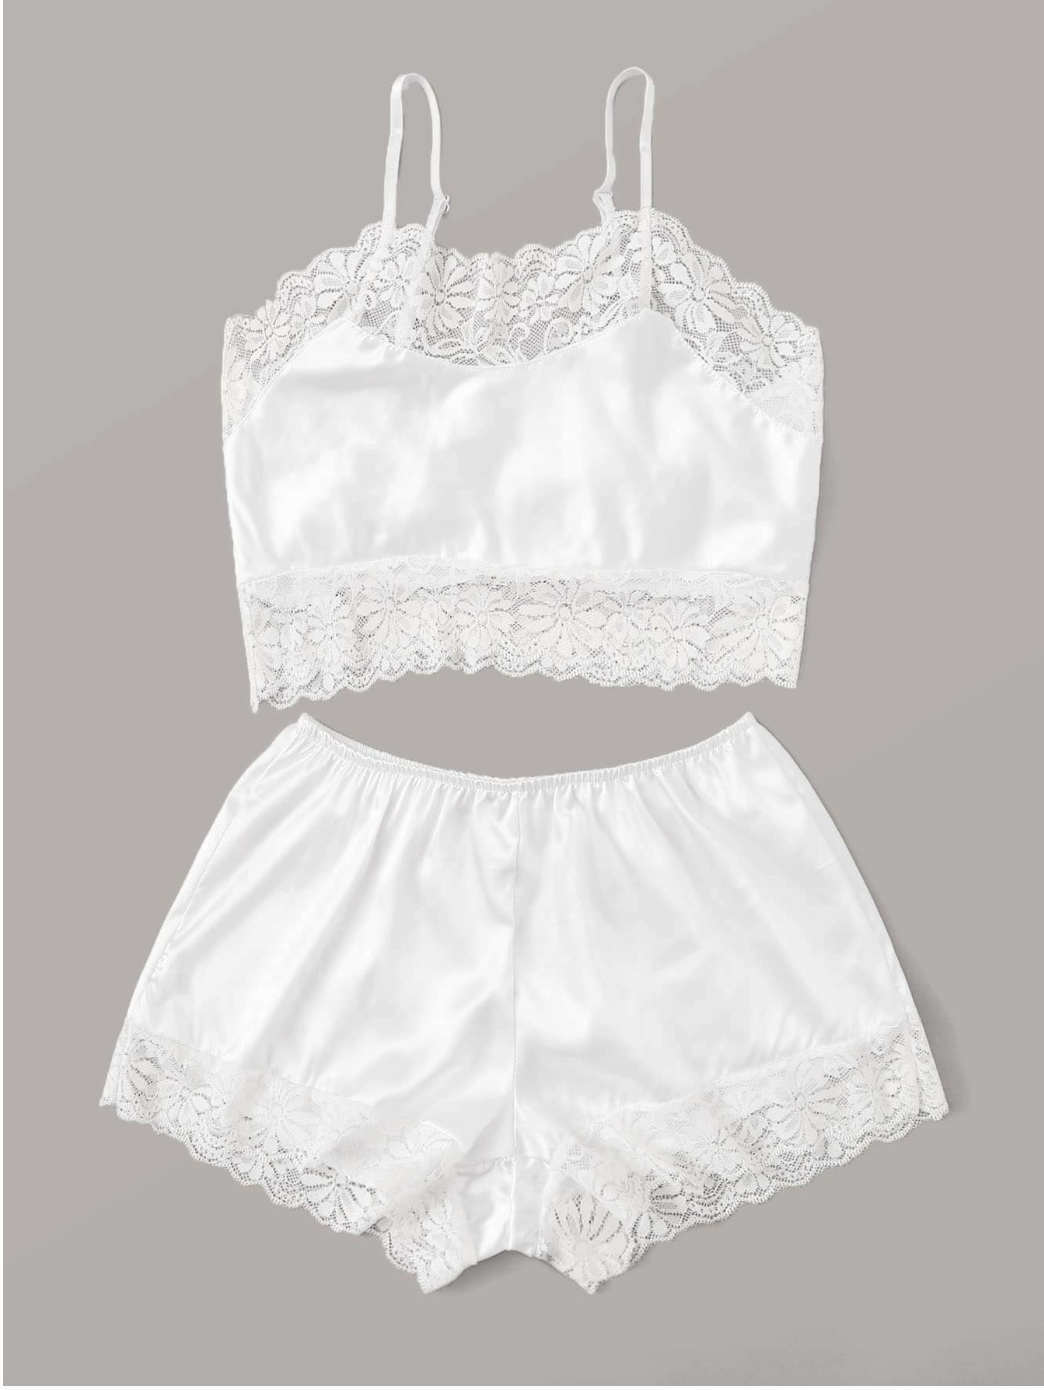 Conjunto de blusa tirantes y short color blanco con acabados de encaje, ideales como ropa interior de una bata o como pijama.